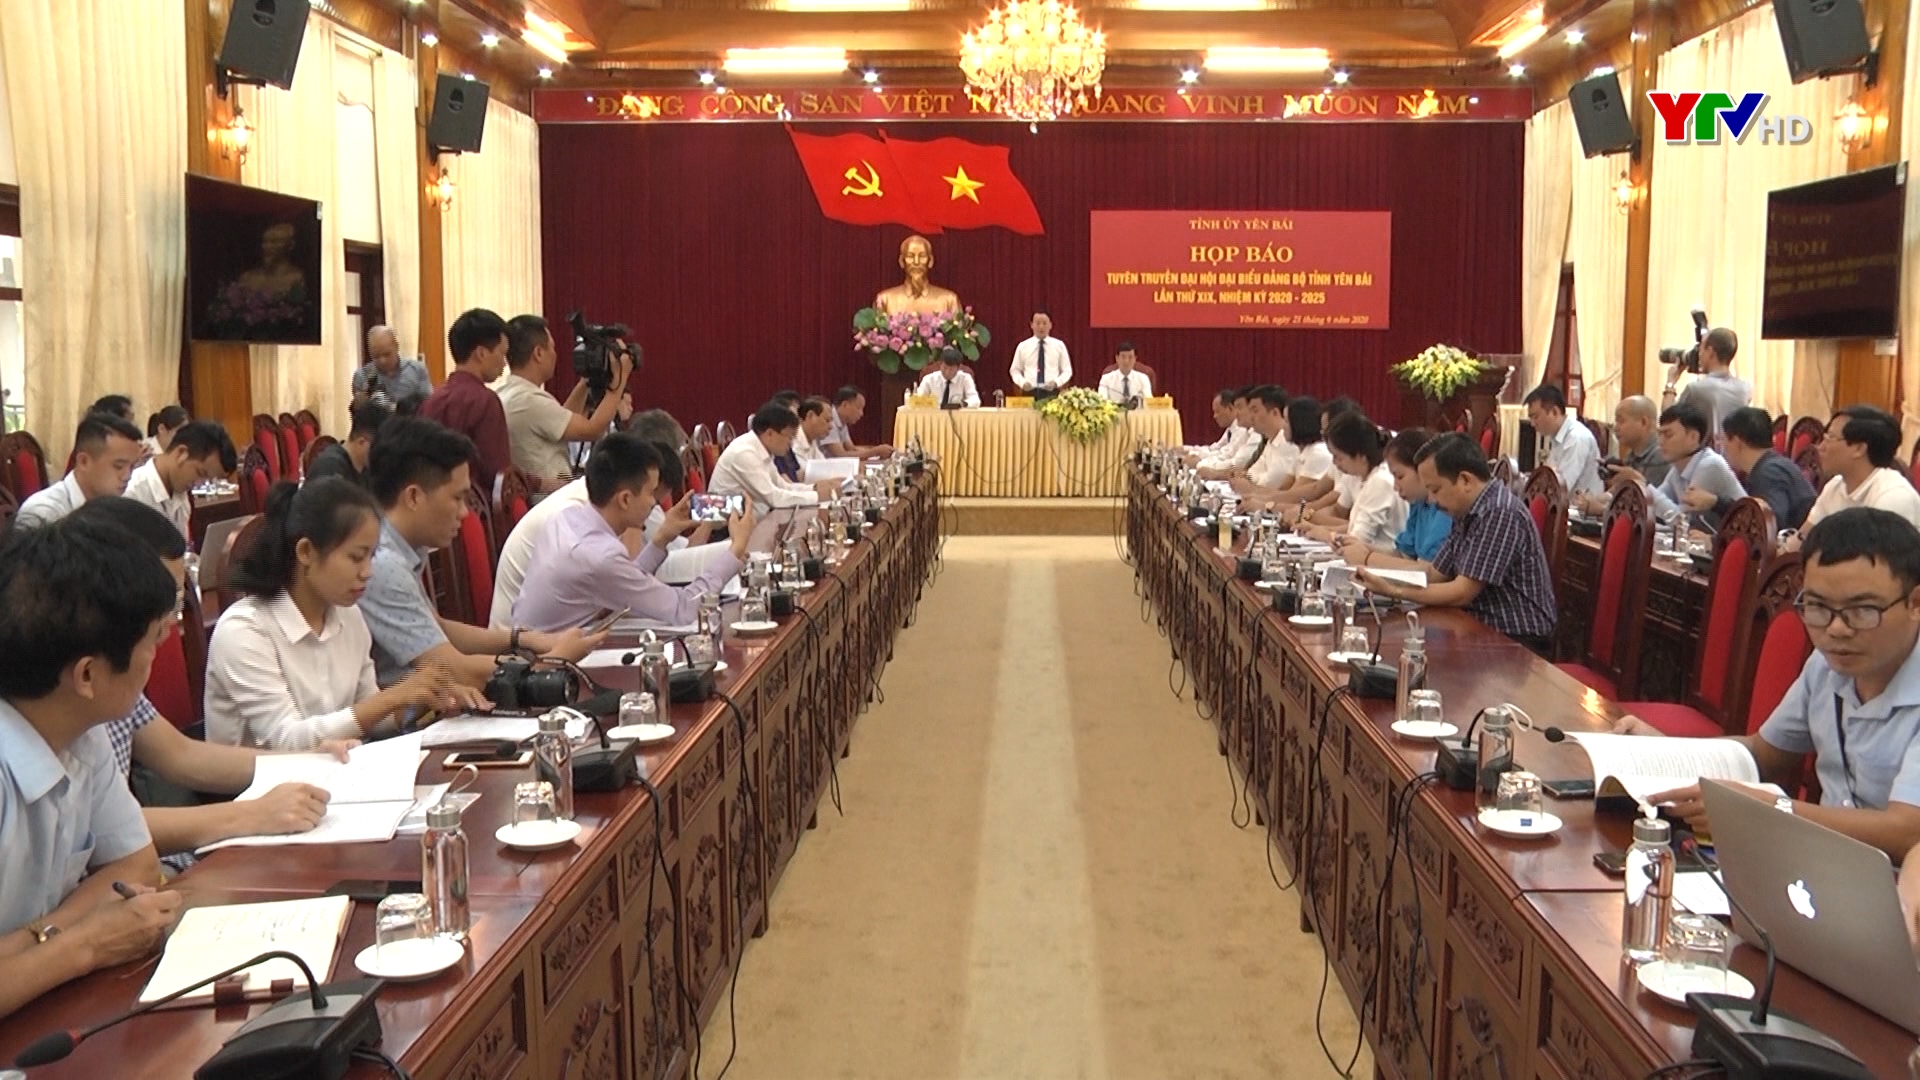 Tỉnh ủy Yên Bái tổ chức họp báo tuyên truyền Đại hội Đảng bộ tỉnh Yên Bái lần thứ XIX, nhiệm kỳ 2020 – 2025